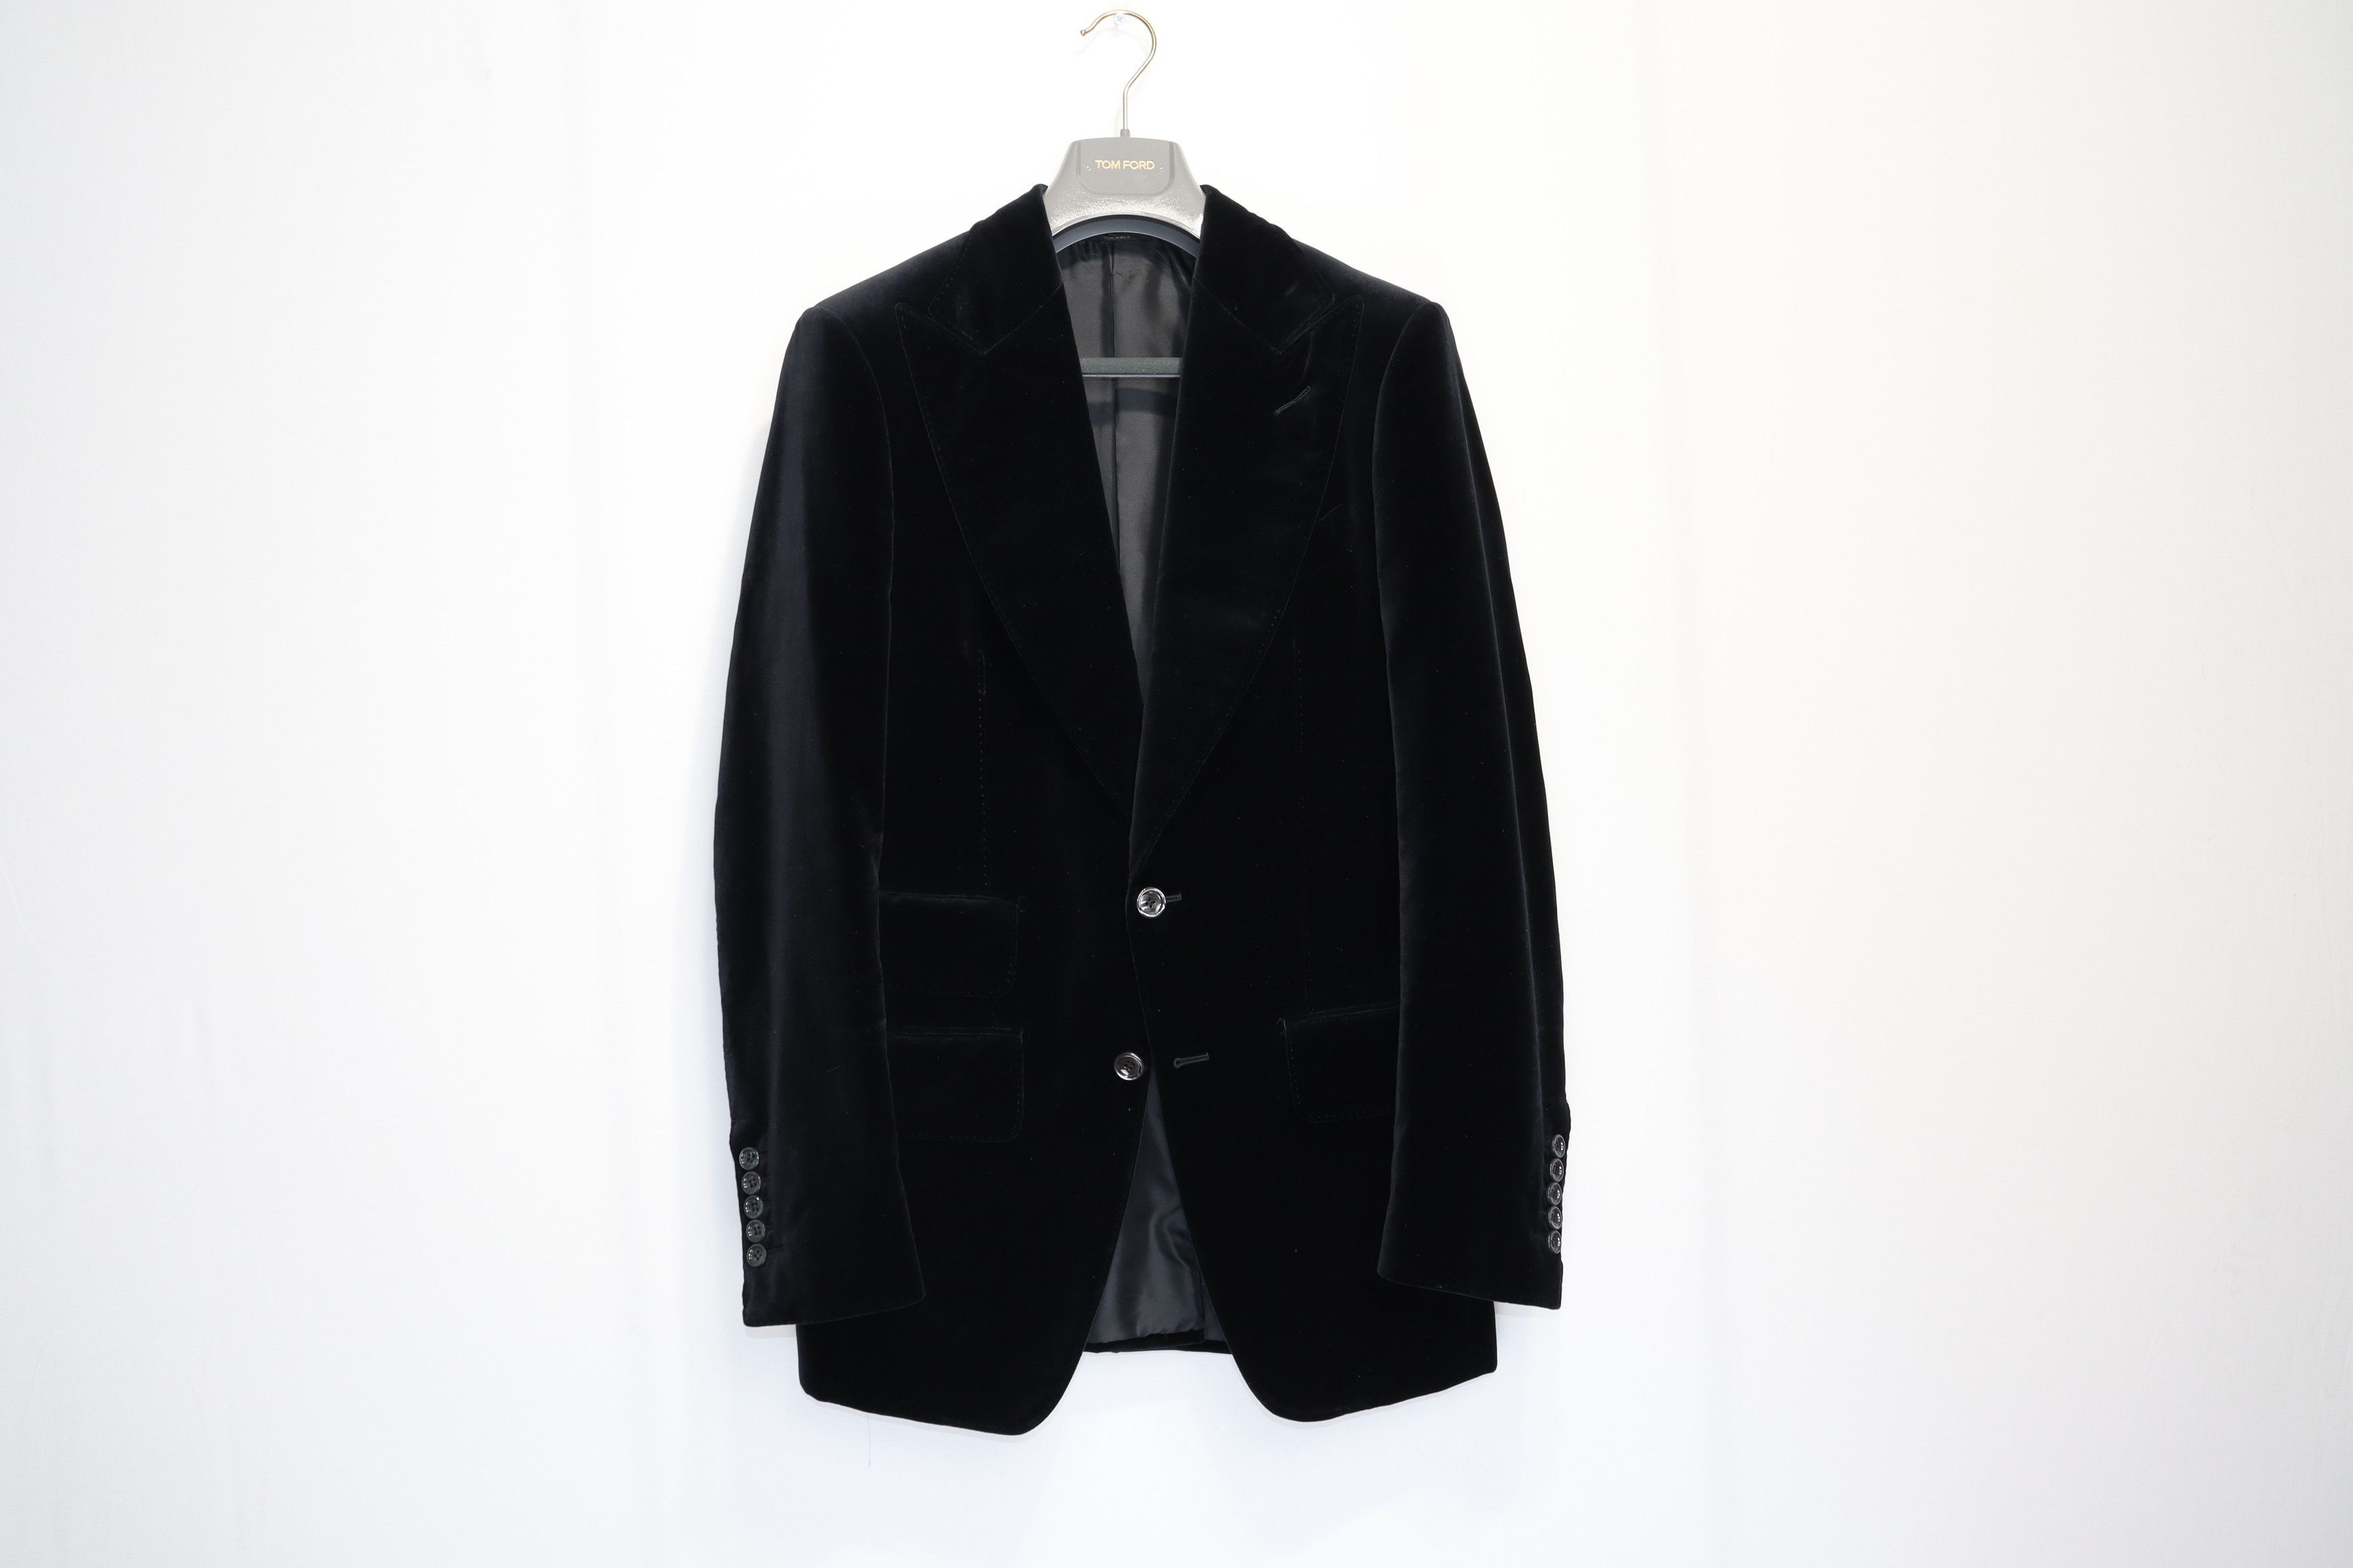 Harford Velvet Black Suit (7a8894a17f3c3c93088dbf059cd9b03f)